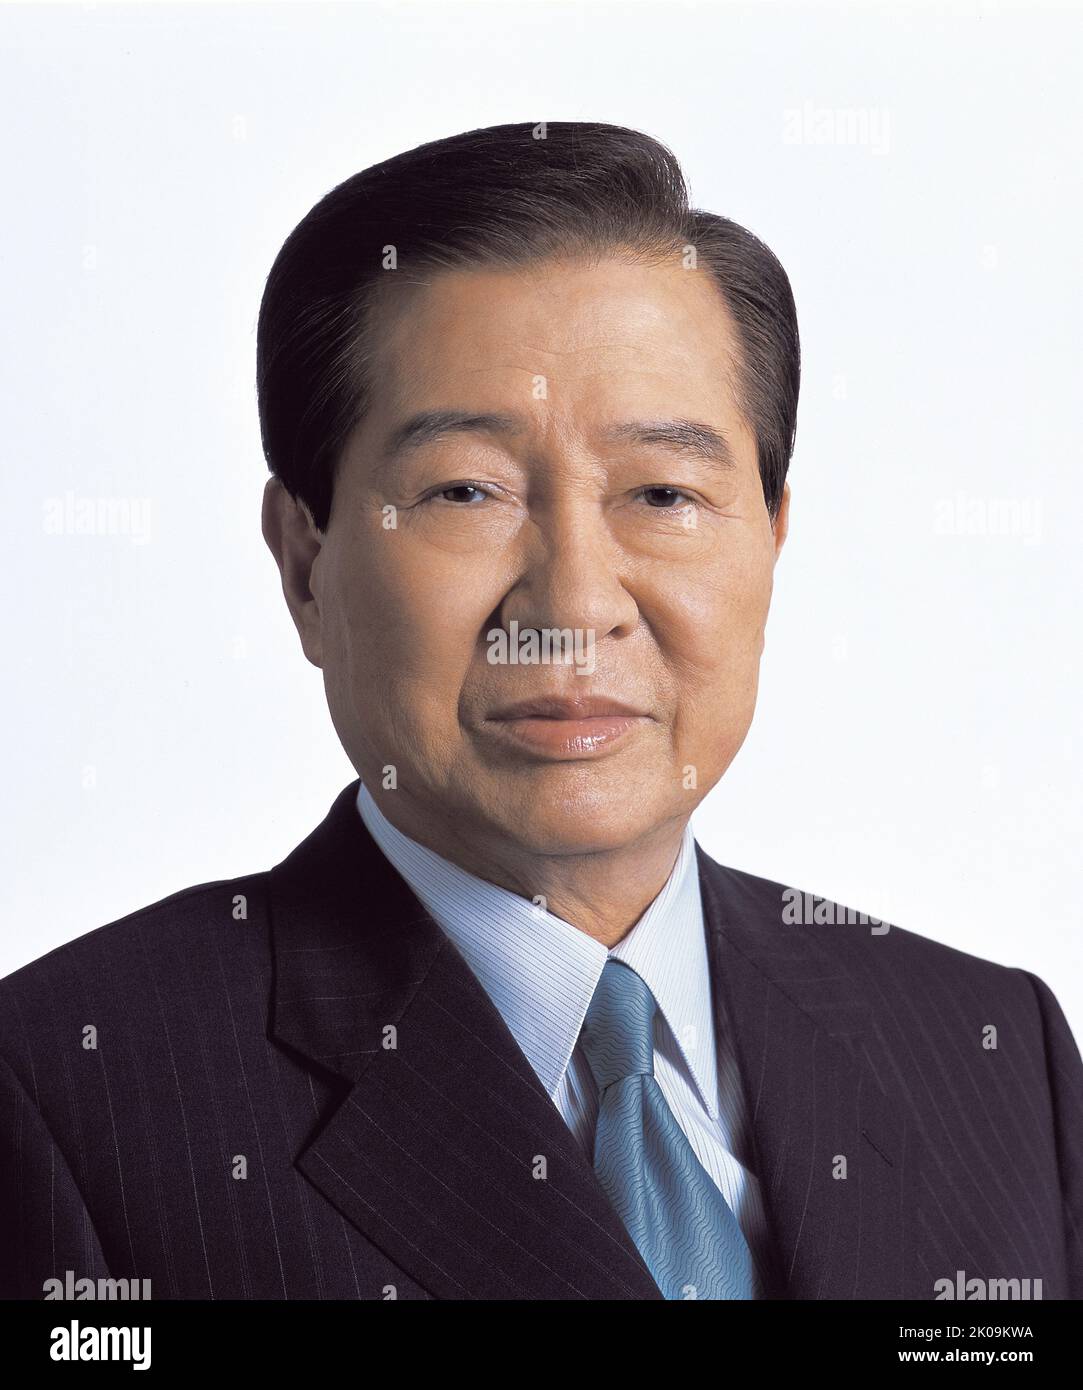 Kim DAE-jung (1924 - 2009), südkoreanischer Staatsmann und Aktivist, der von 1998 bis 2003 als achter Präsident Südkoreas fungierte. 2000 erhielt er den Friedensnobelpreis für seine Arbeit für Demokratie und Menschenrechte in Südkorea und in Ostasien im Allgemeinen sowie für Frieden und Versöhnung mit Nordkorea und Japan. Stockfoto